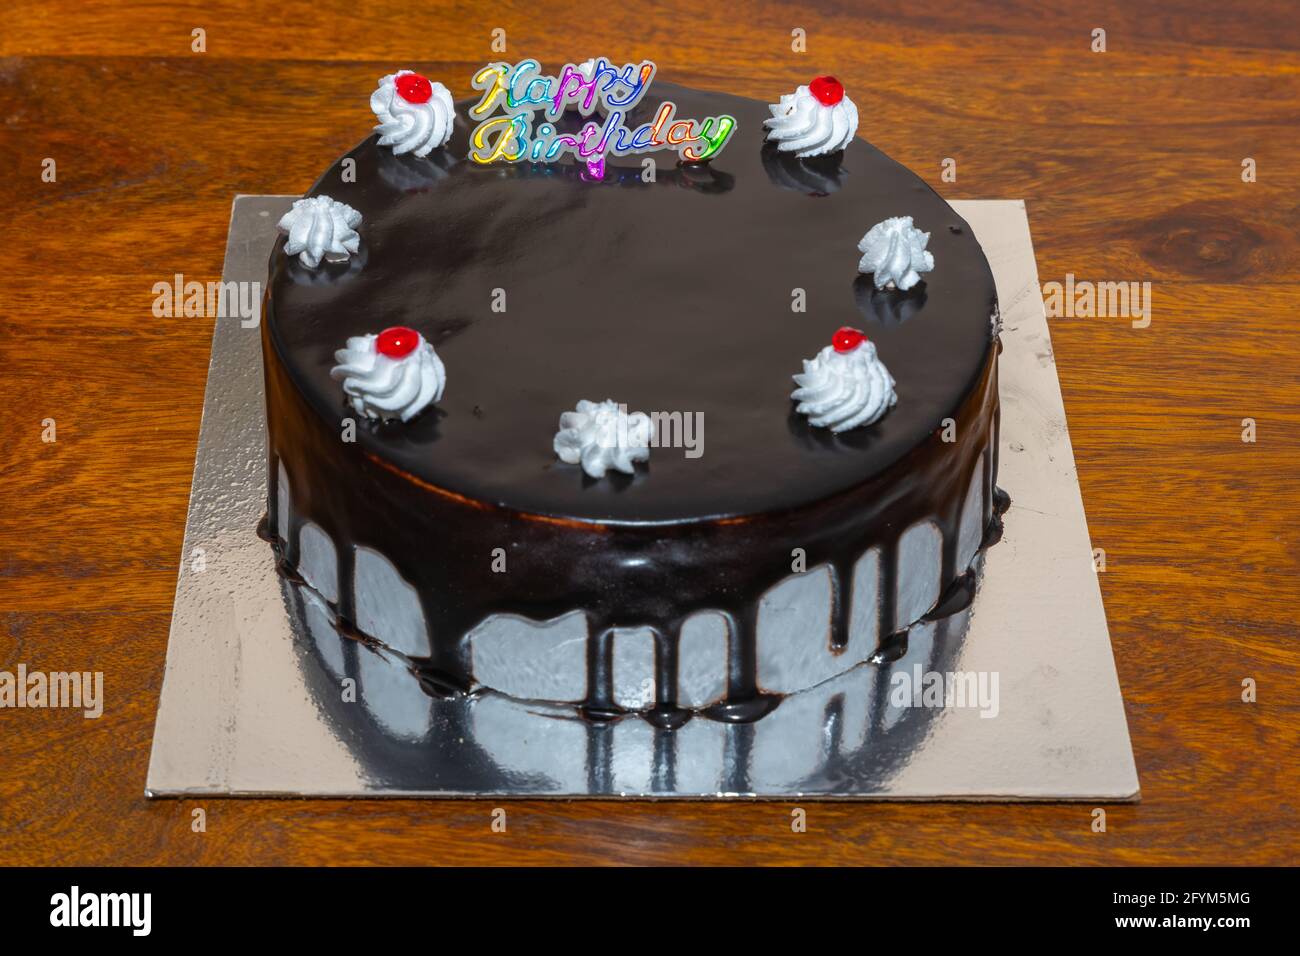 Una torta al cioccolato fondente con ciliegia e buon compleanno scritto su di essa Foto Stock